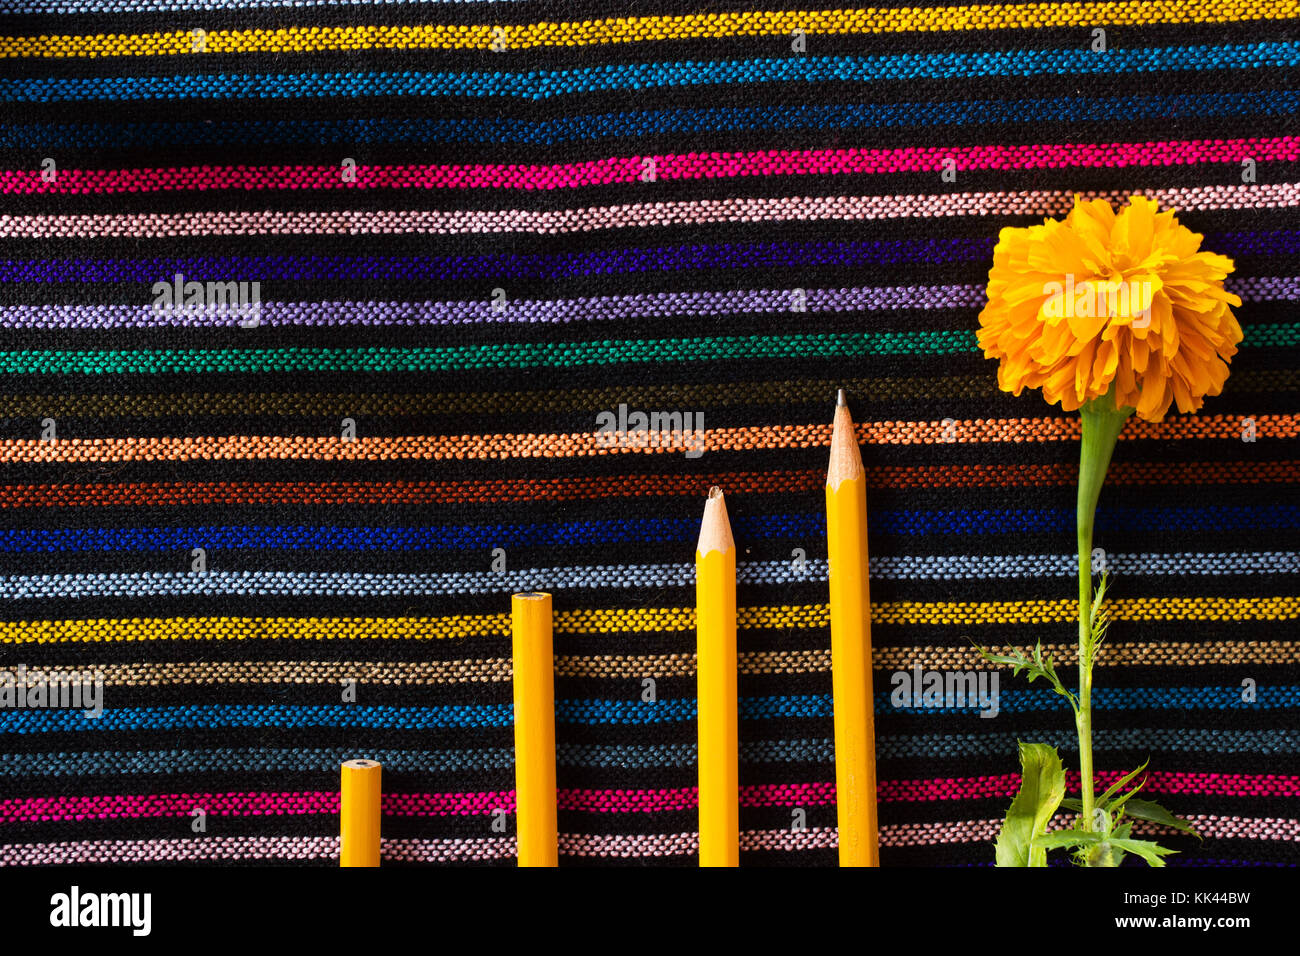 Orange bois crayons avec différents conseils et une fleur jaune sur un tissu coloré Banque D'Images